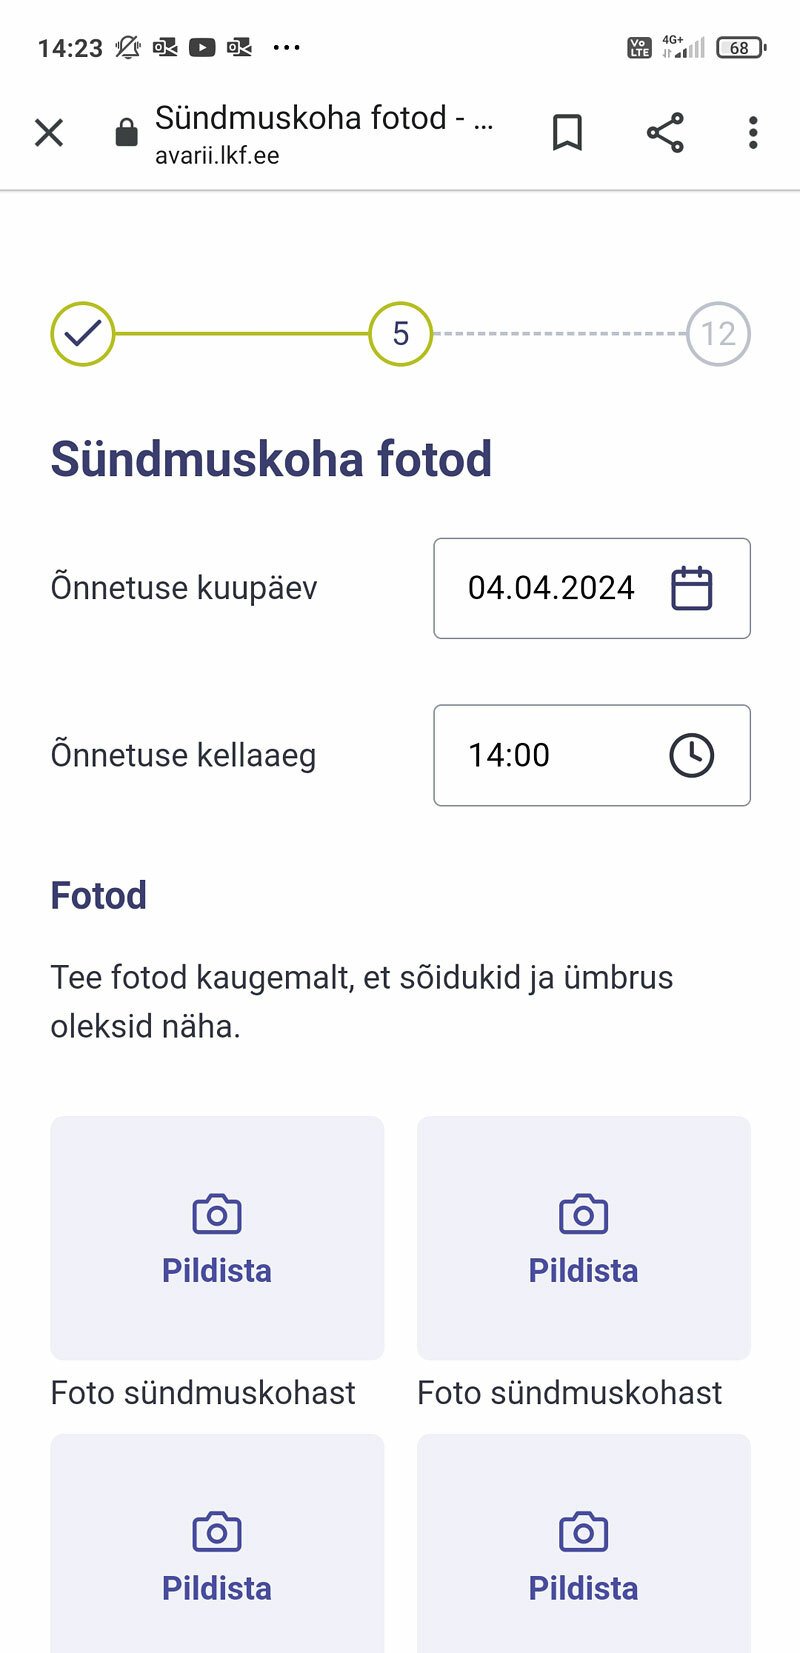 Díky obrázkům a celkově přehlednému designu se dá estonská aplikace vyplnit i v estonštině, ačkoliv jí nevládnete. Pro větší pohodlí si ale může uživatel vybrat ještě ruštinu a angličtinu.